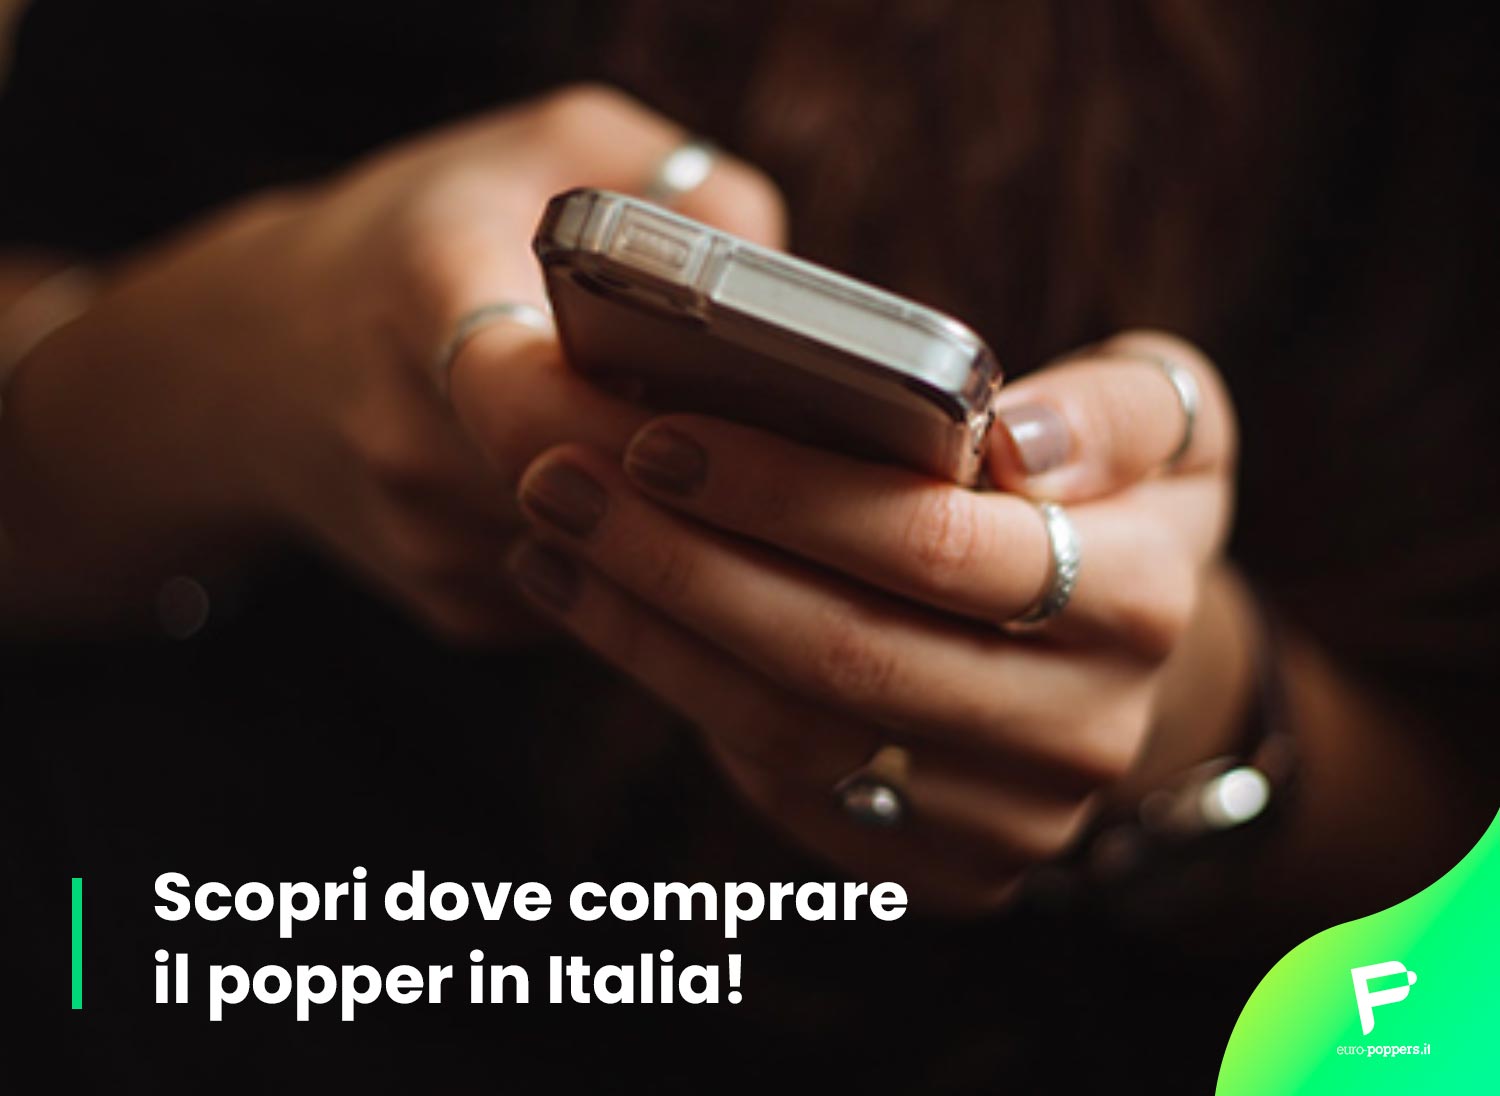 Al momento stai visualizzando Scopri dove comprare il popper in Italia! 